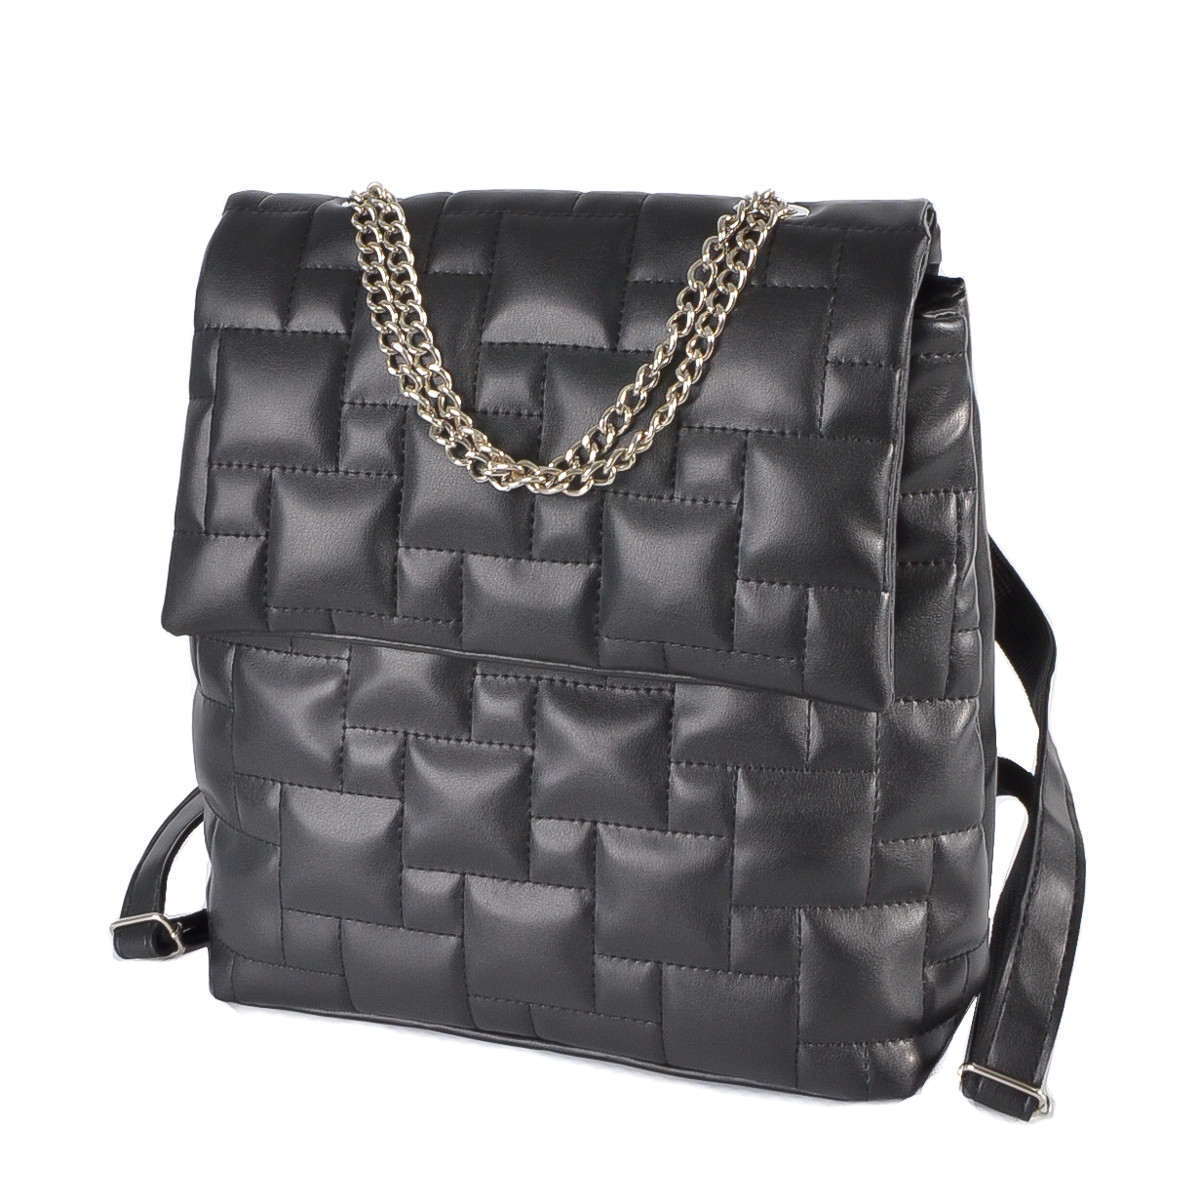 ЧОРНИЙ — стильний стьобаний багатофункціональний жіночий рюкзак від українського виробника (Луцьк, 767)